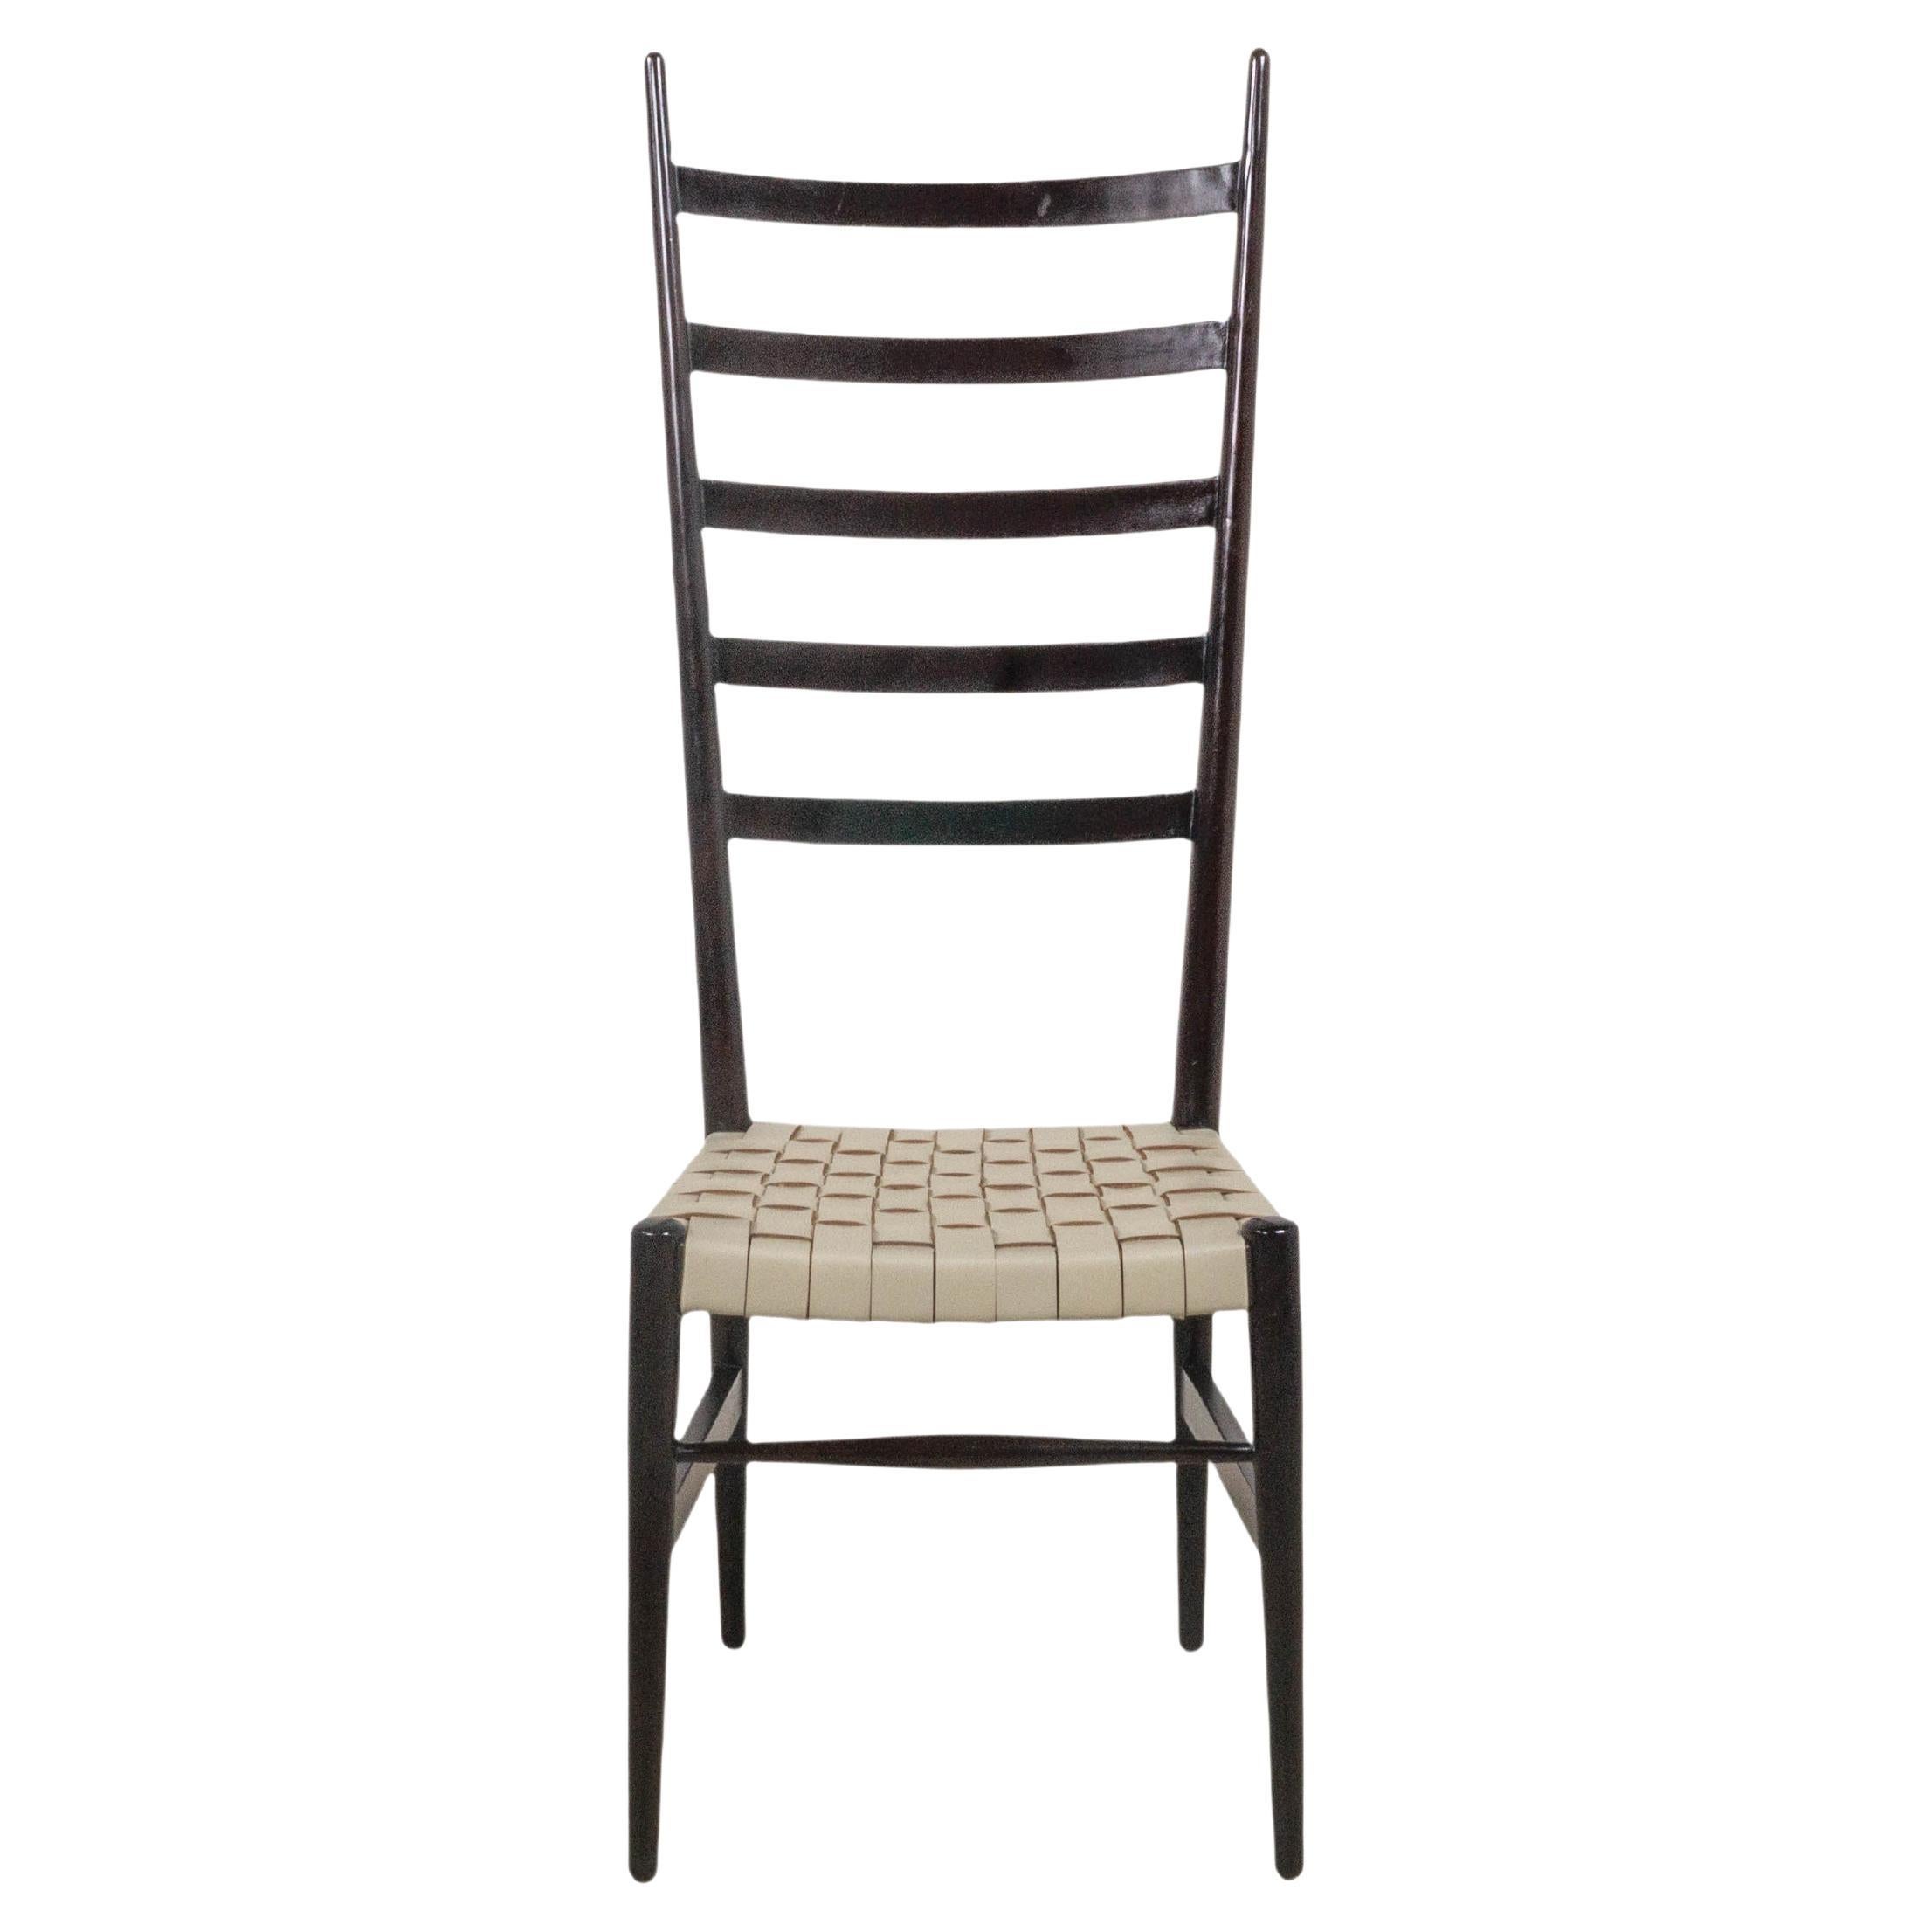 L'ensemble de 8 chaises de salle à manger otto Gerdan avec sièges en cuir basket-weave et dossier en échelle noire, provenant d'Italie vers 1970, est une pièce vraiment luxueuse. Les chaises sont dotées de sièges en cuir tissé à la main dans le